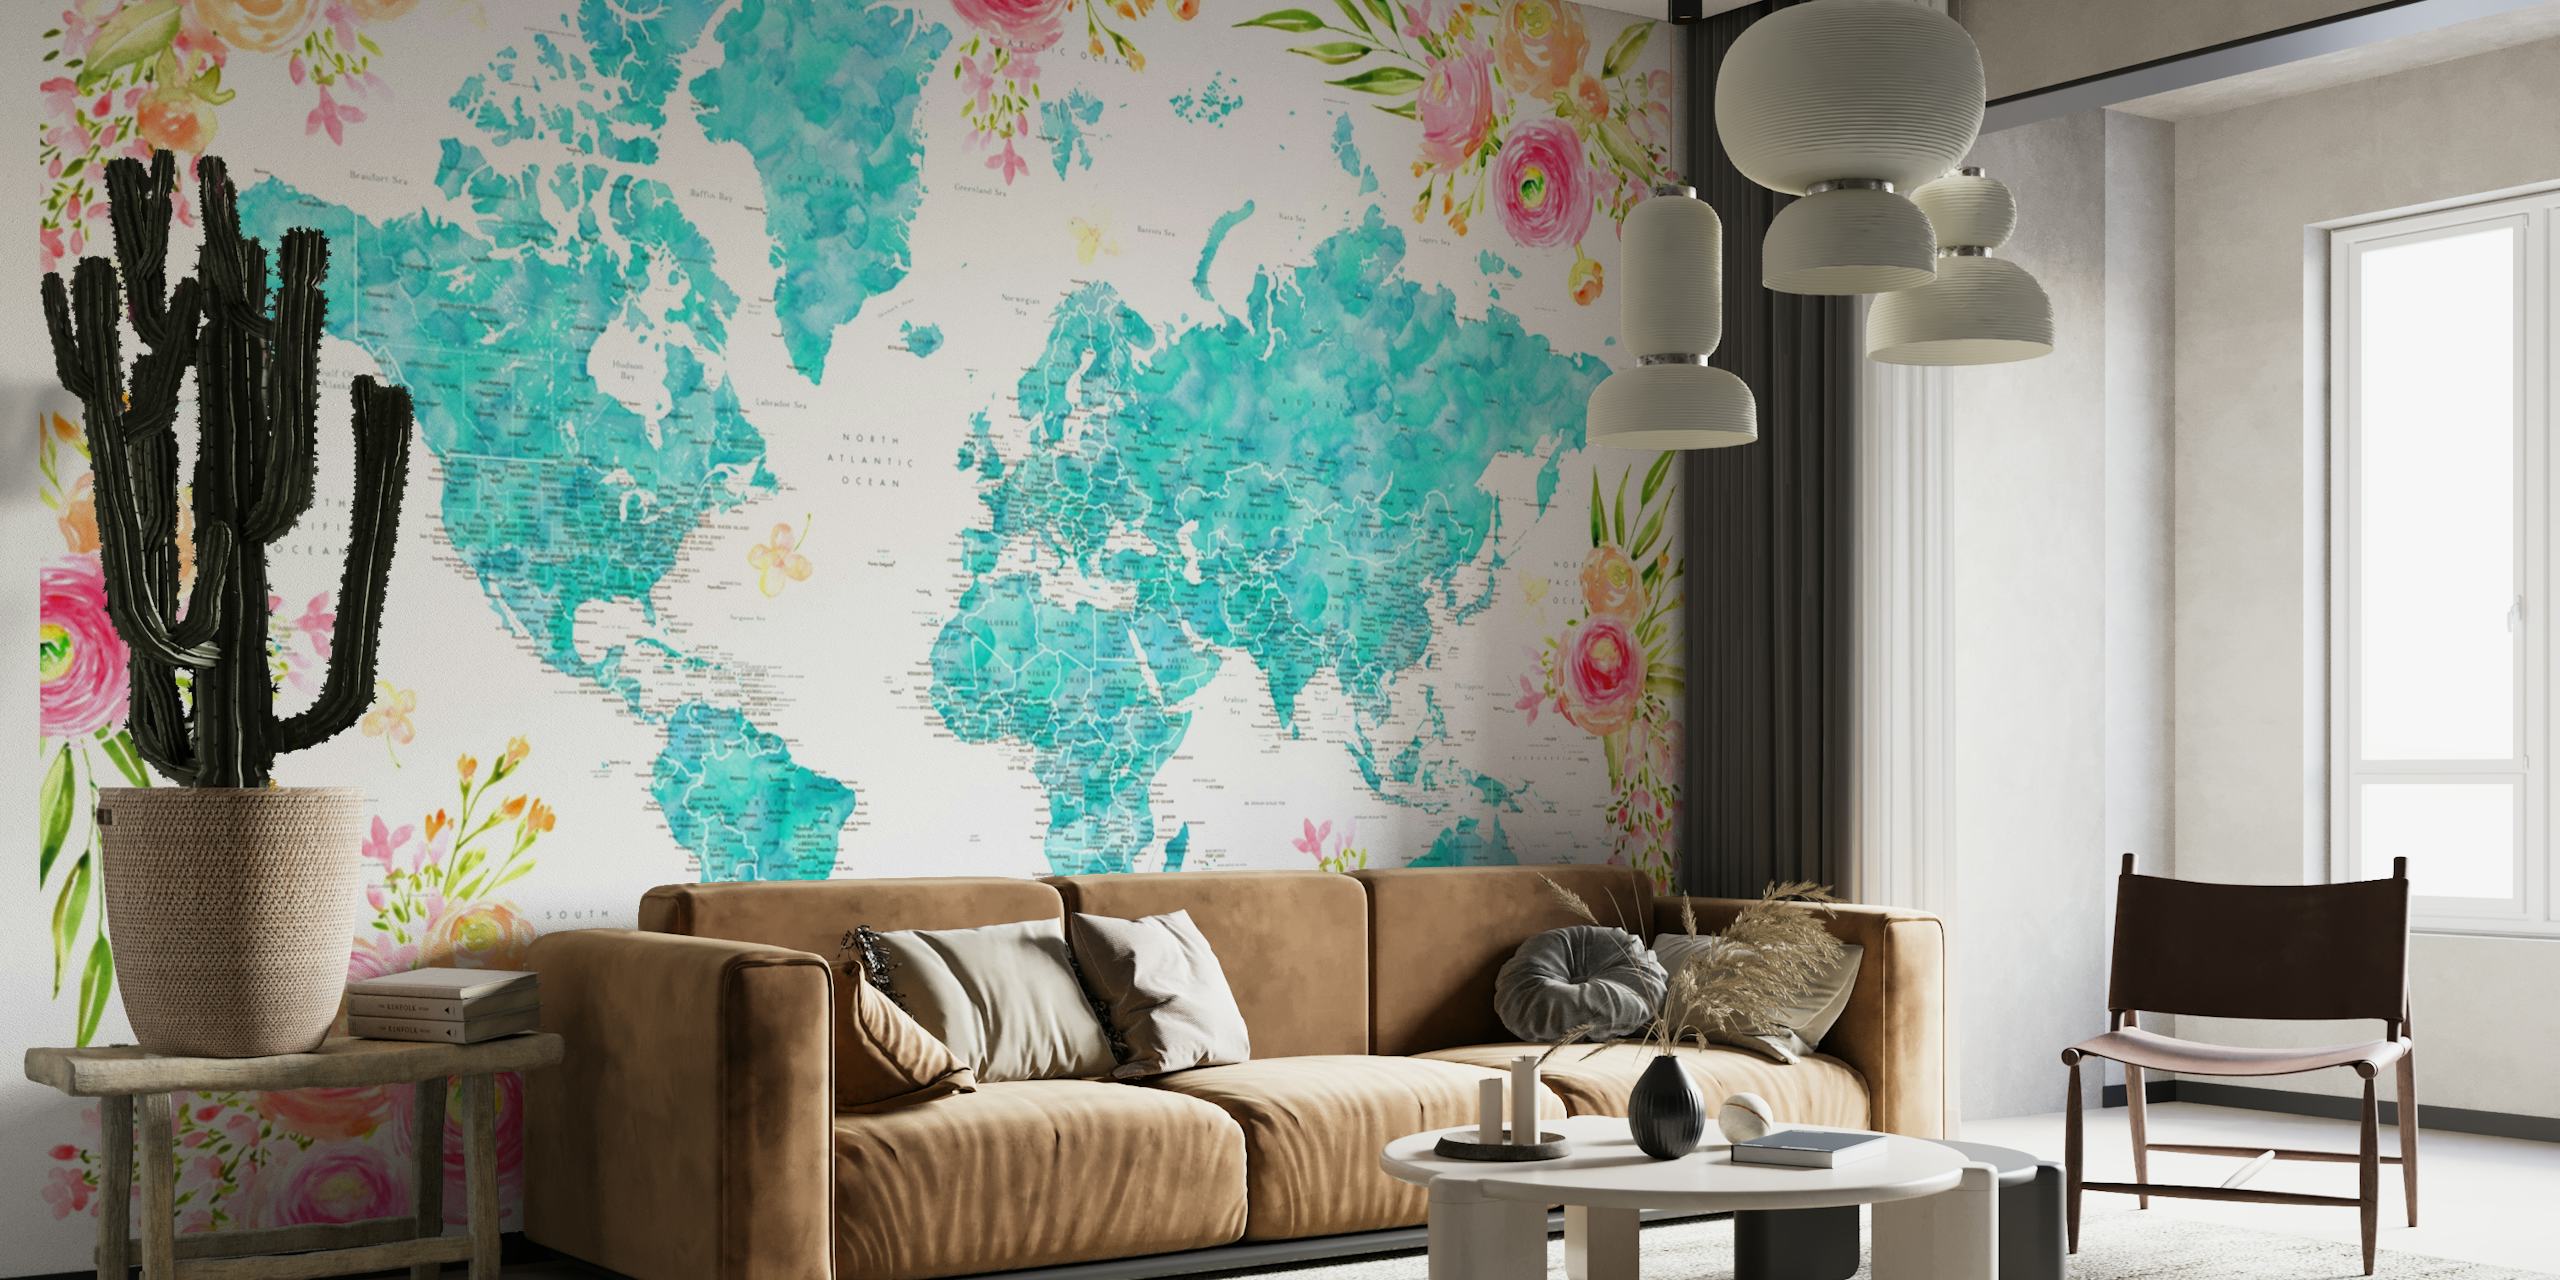 Detaljna karta svijeta s cvjetnim obrubom u tirkiznim i pastelnim nijansama na zidnom muralu.